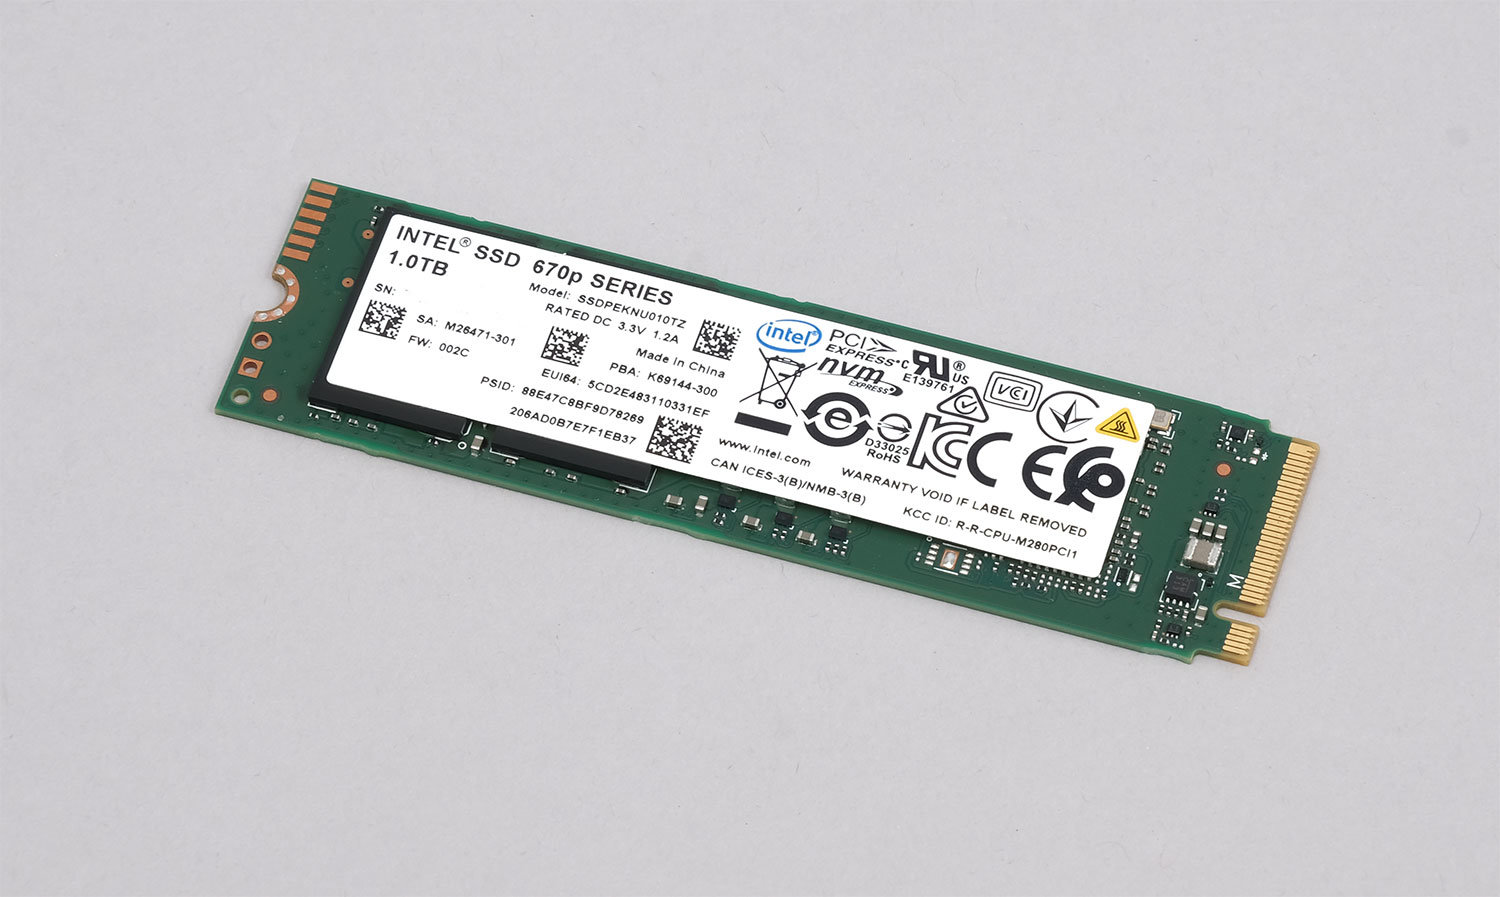 PCIe 4.0より速い!? リアルな検証で分かったIntel SSD 670pの真の実力 